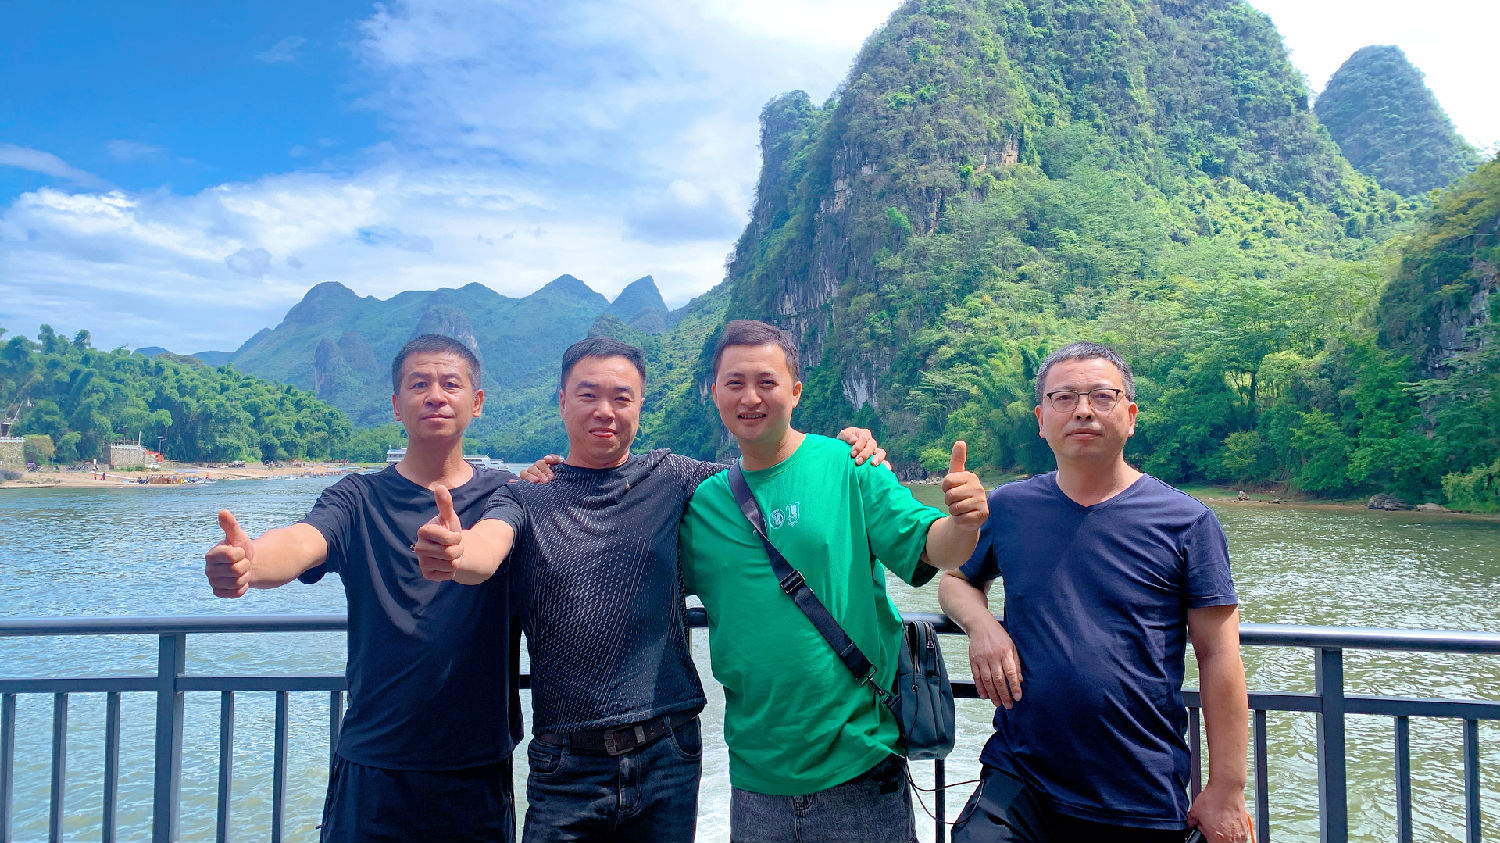 日新环境组织三年以上工龄家人赴桂林五日游